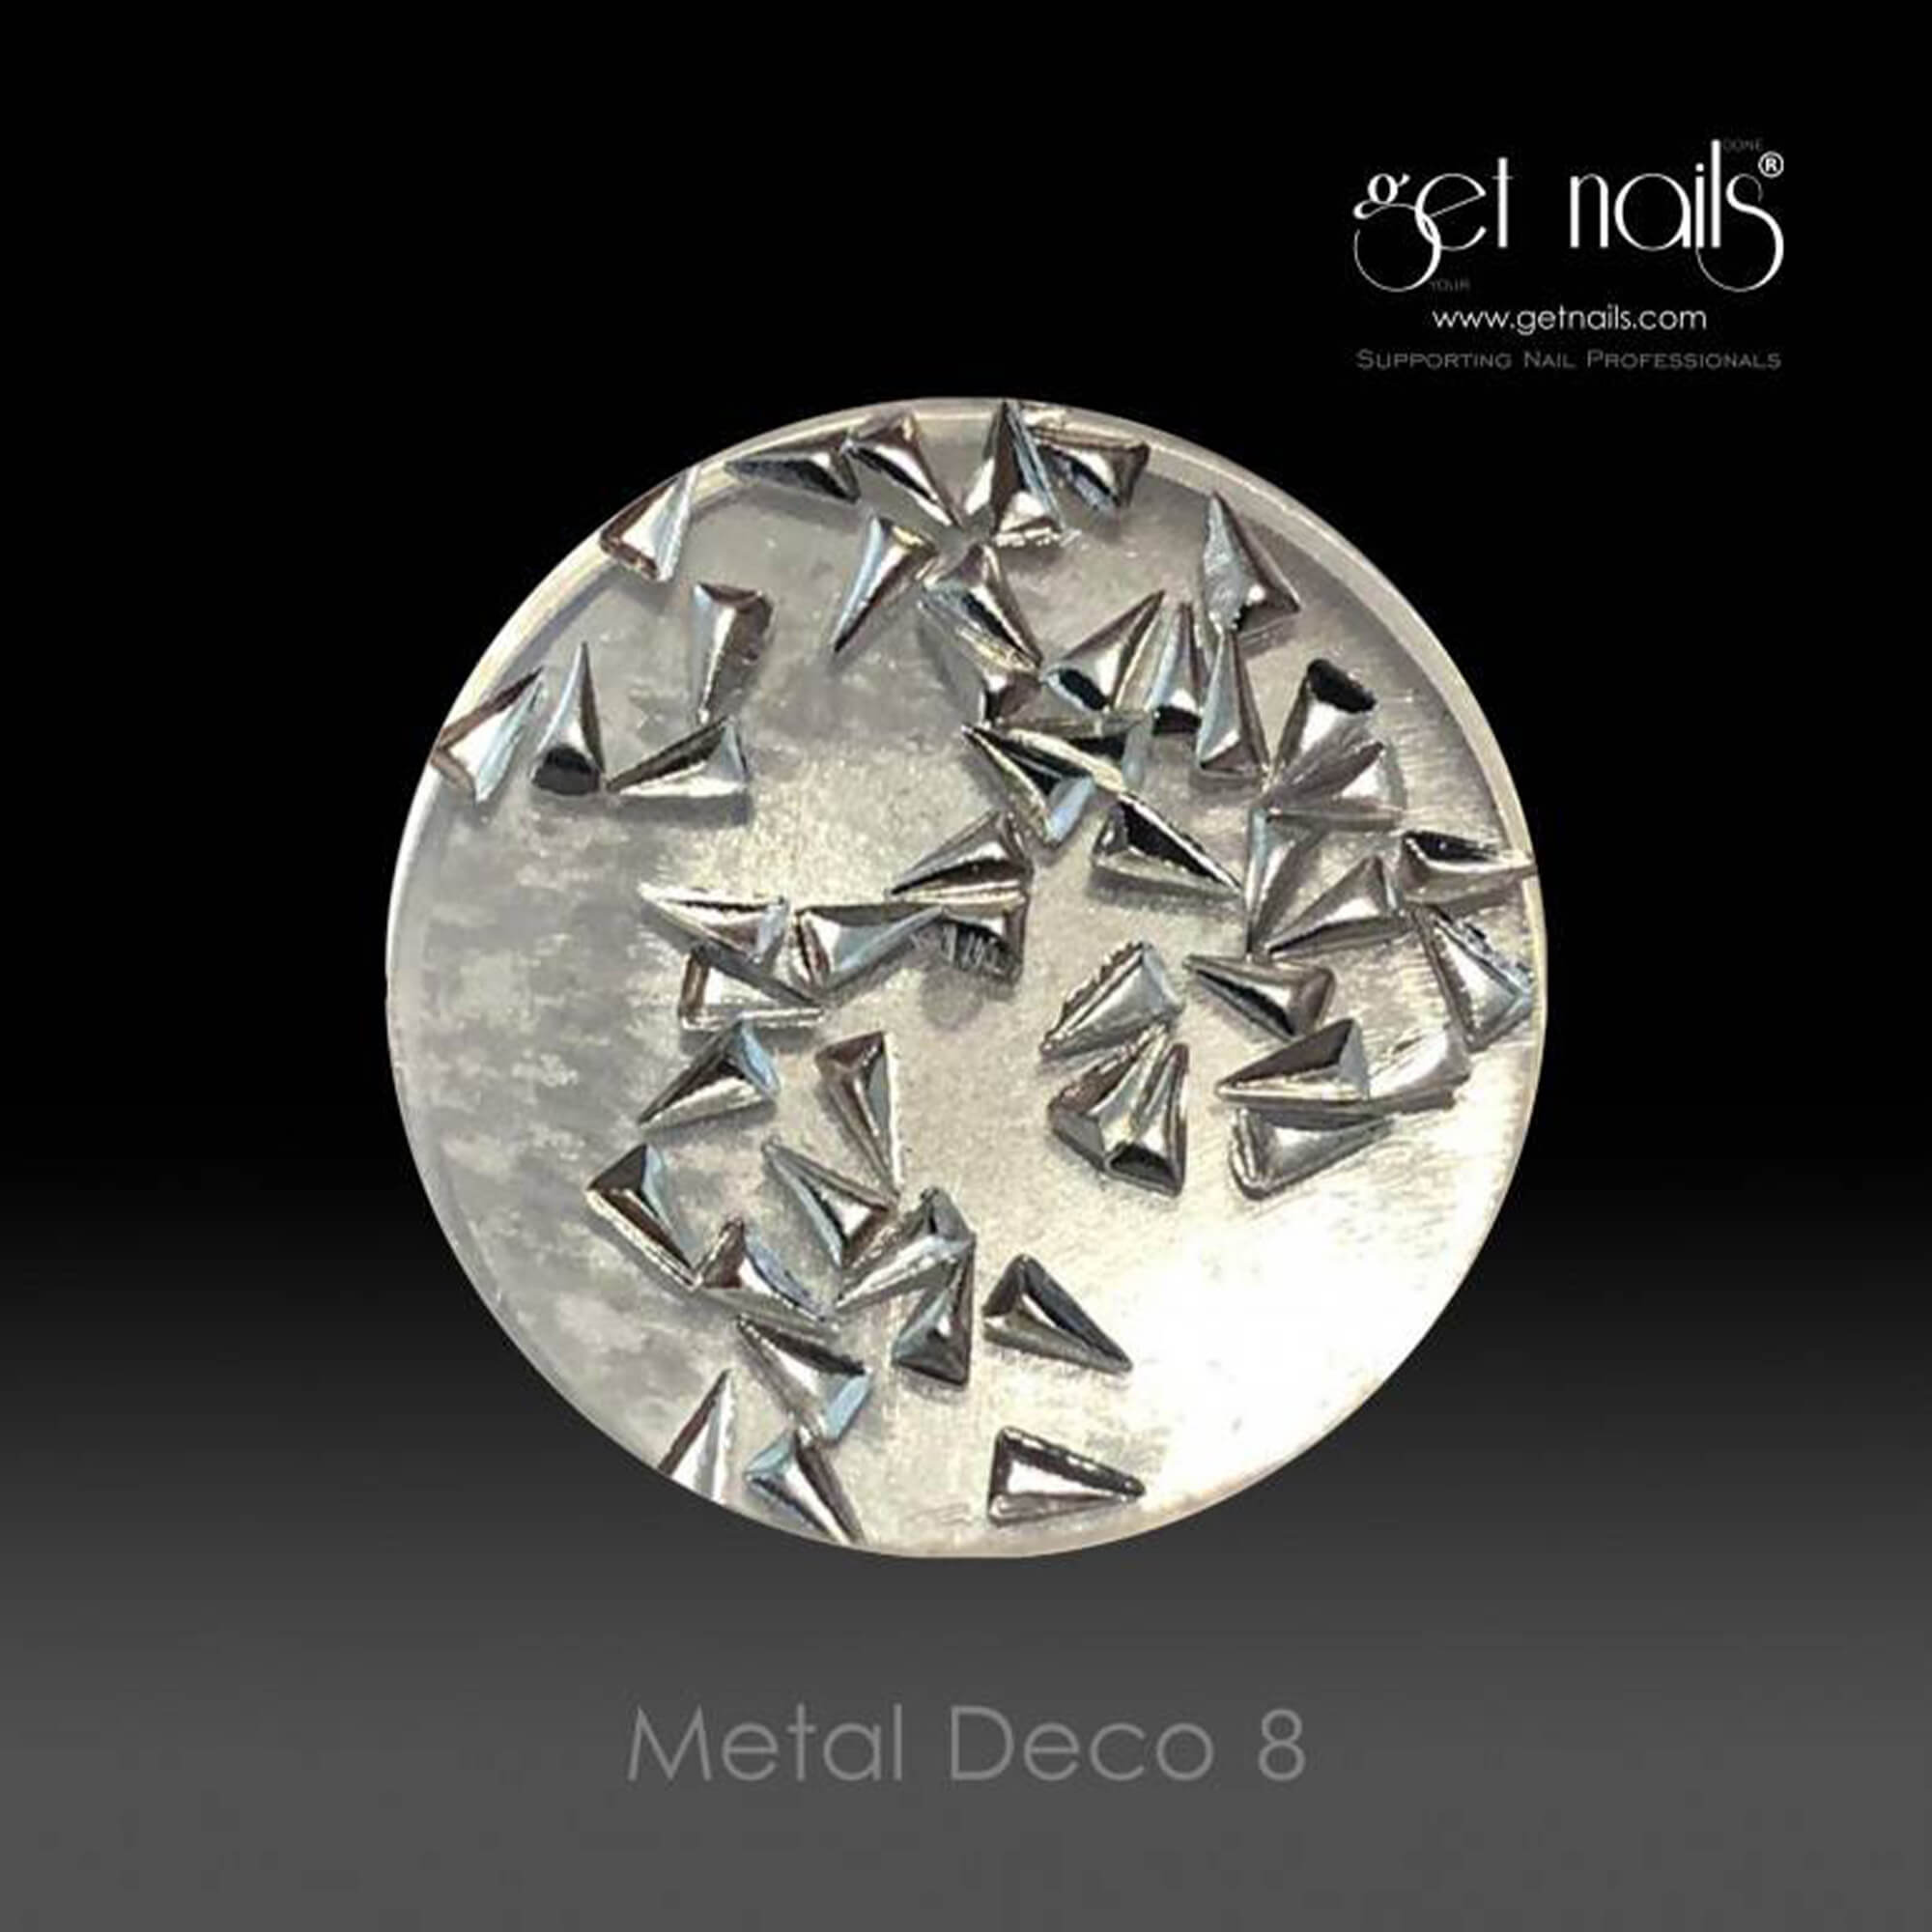 Get Nails Austria - Metal Deco 8 Silver, 50 pcs